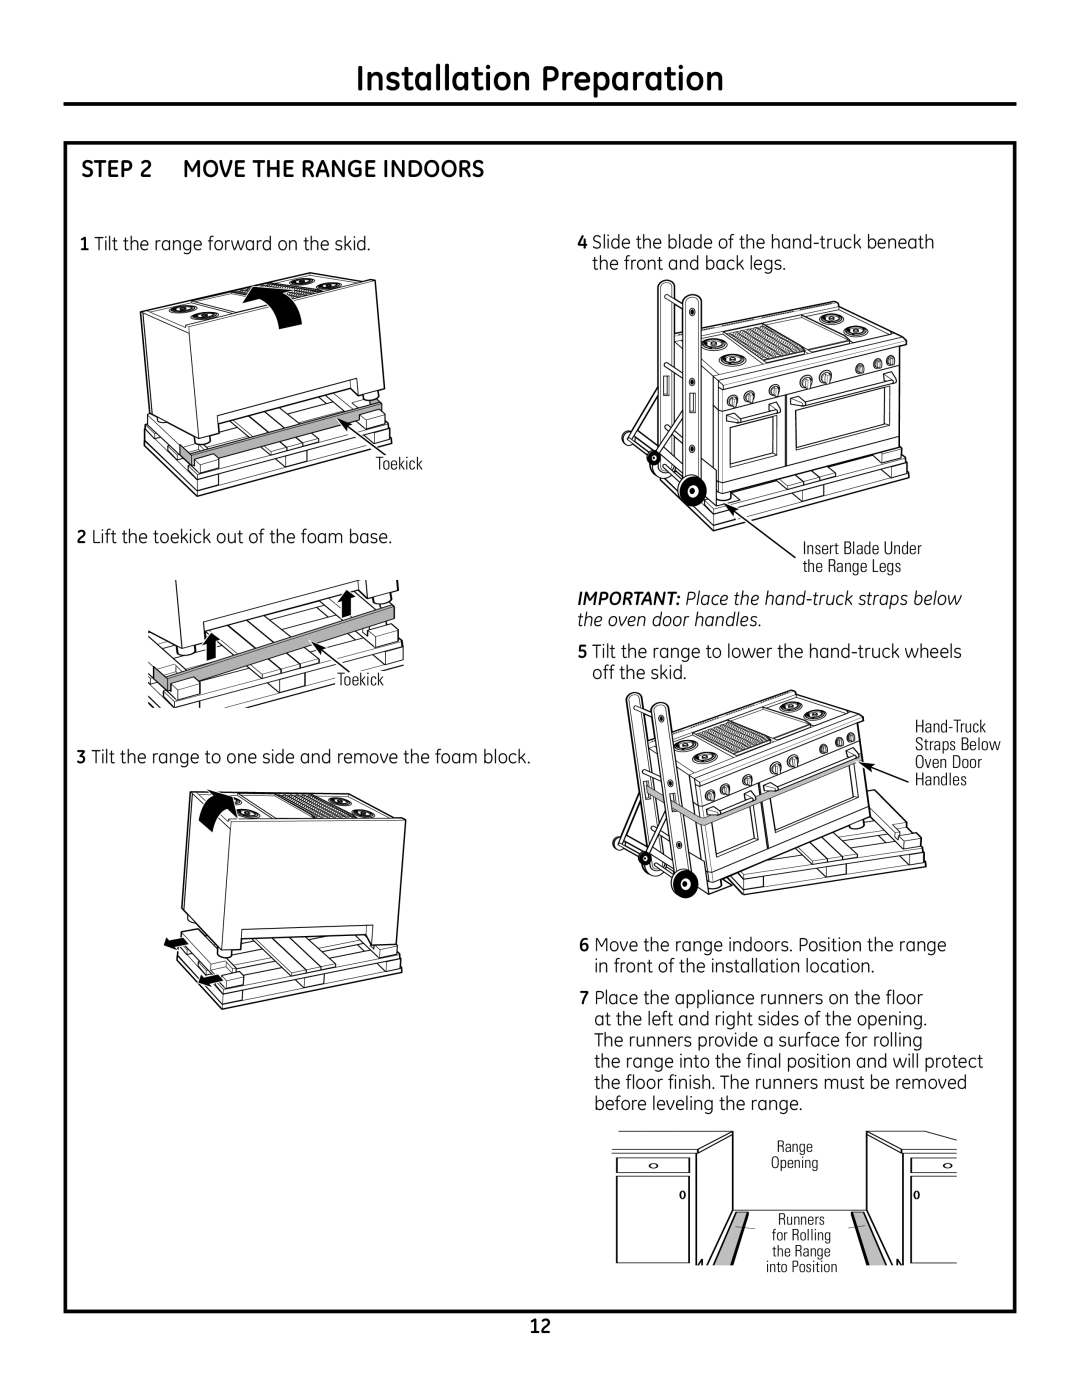 GE Monogram Move The Range Indoors, IMPORTANT Place the hand-truck straps below the oven door handles 